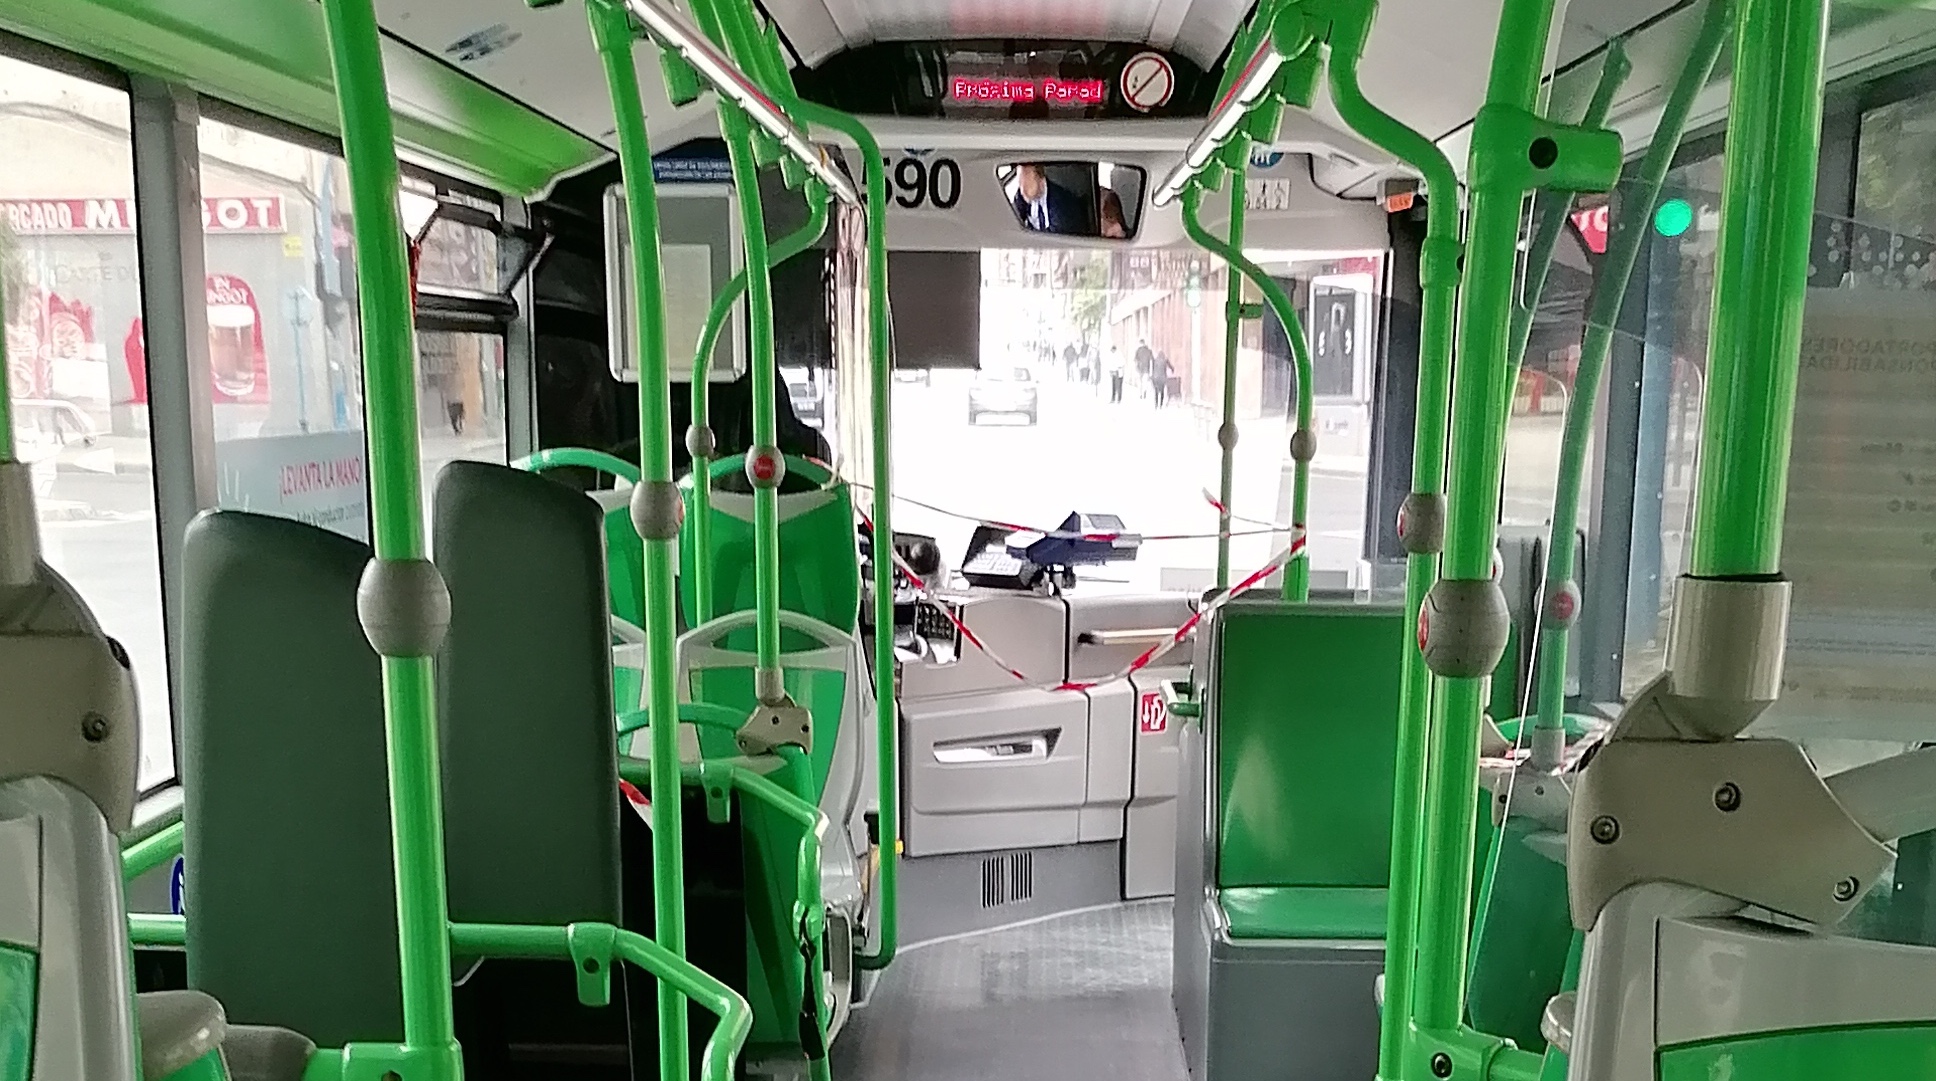 interior autobus